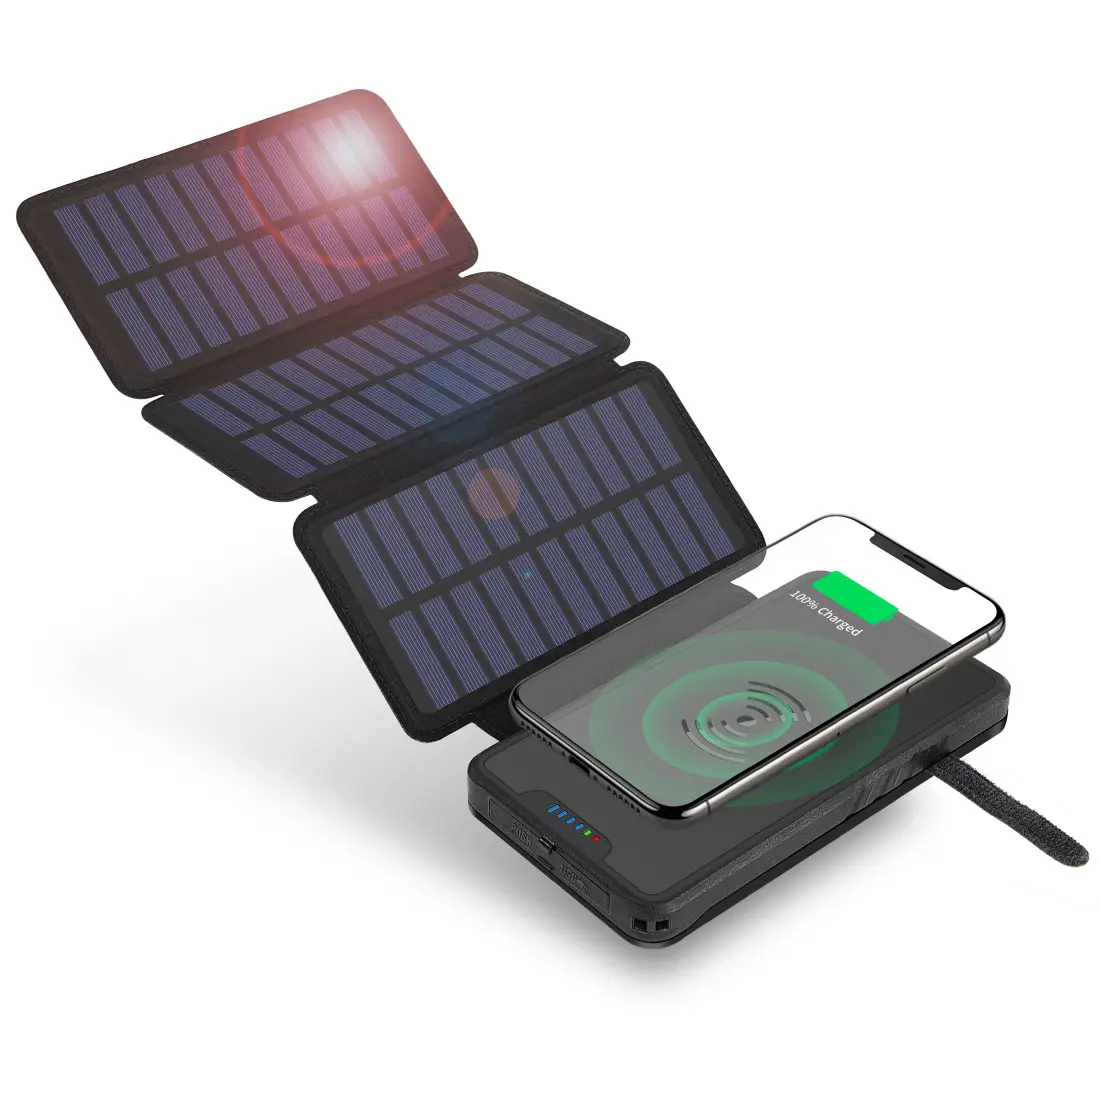 باور بانك متعدد الوظائف قابل للطي يعمل بالطاقة الشمسية شاحن للهواتف المحمولة والكمبيوتر المحمول بقدرة 10000 مللي أمبير في الساعة مناسب للسفر والتخييم بطارية ليثيوم بوليمر